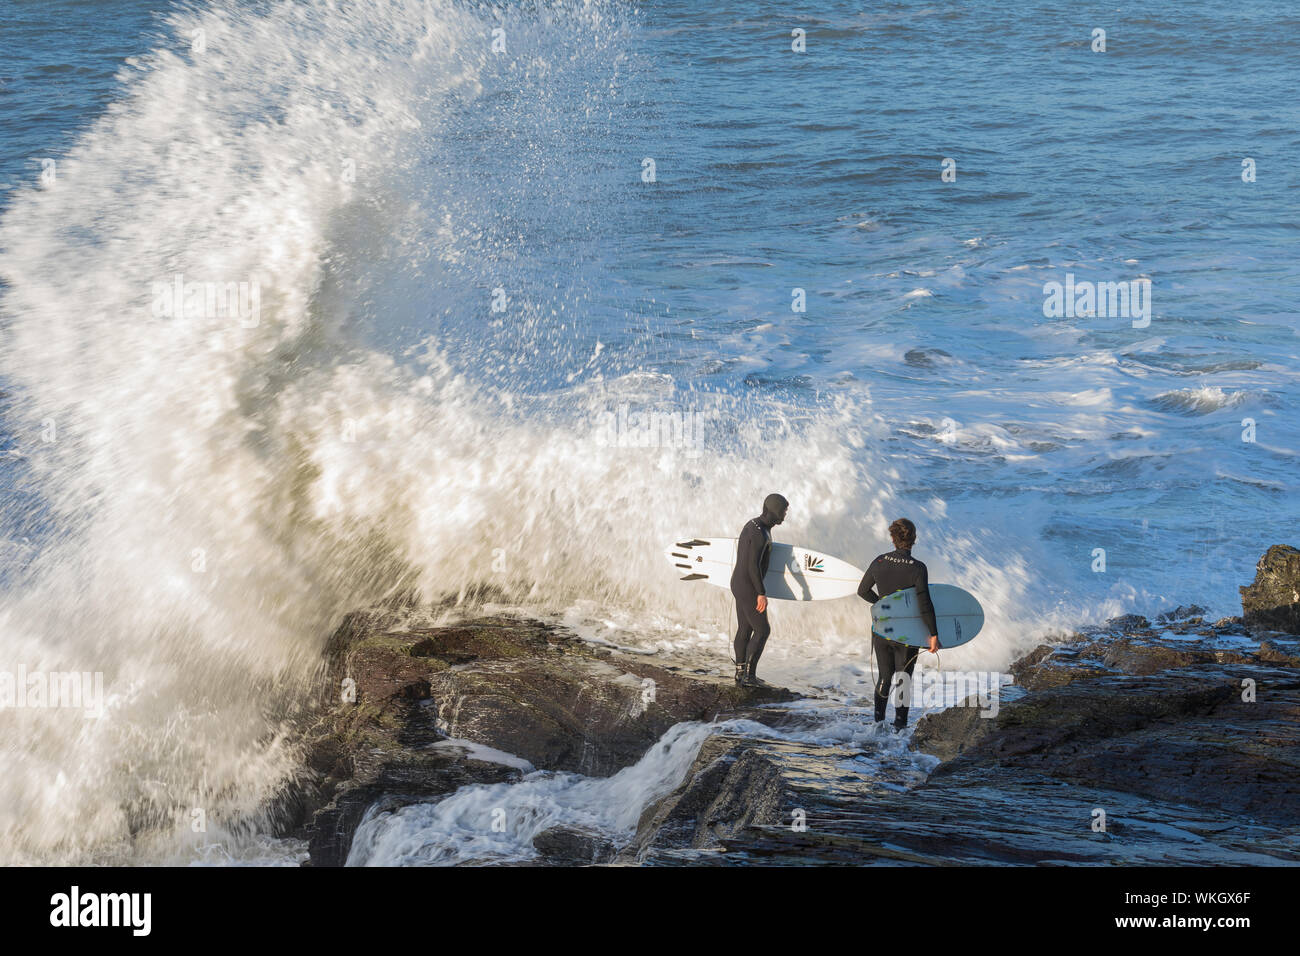 Polzeath, Großbritannien - Jan 06, 2018: Zwei Surfer versucht, einen Weg, auf dem Meer, von den Felsen zwischen Polzeath und daymer finden. Wellen sind Absturz in die Felsen Stockfoto